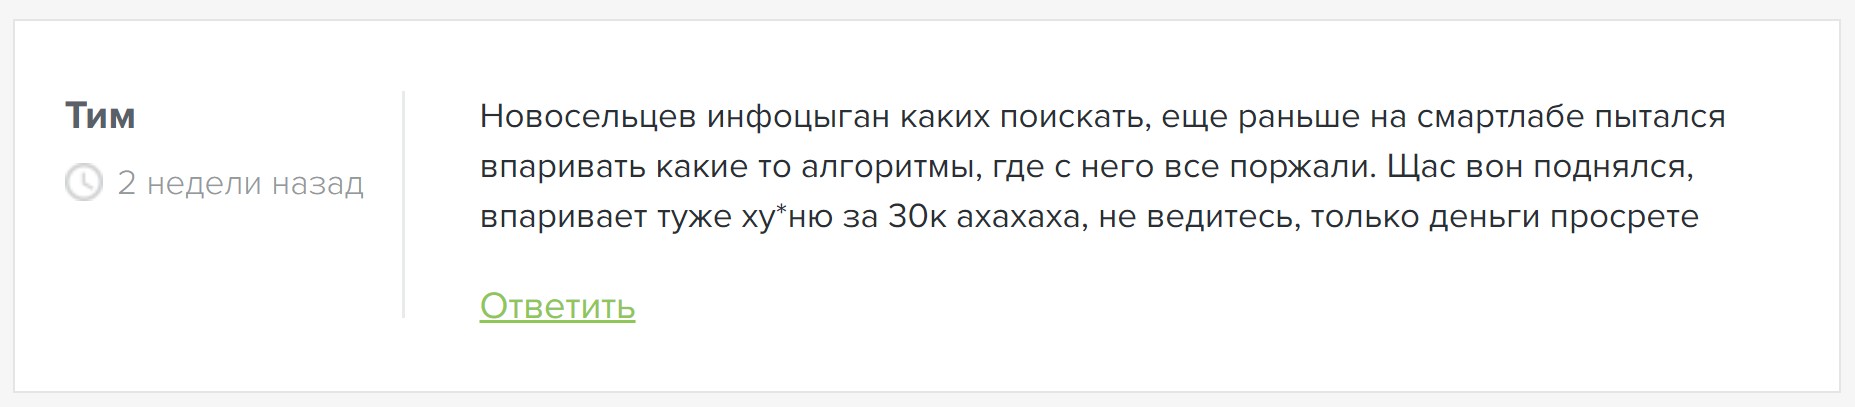 Игорь Новосельцев отзывы